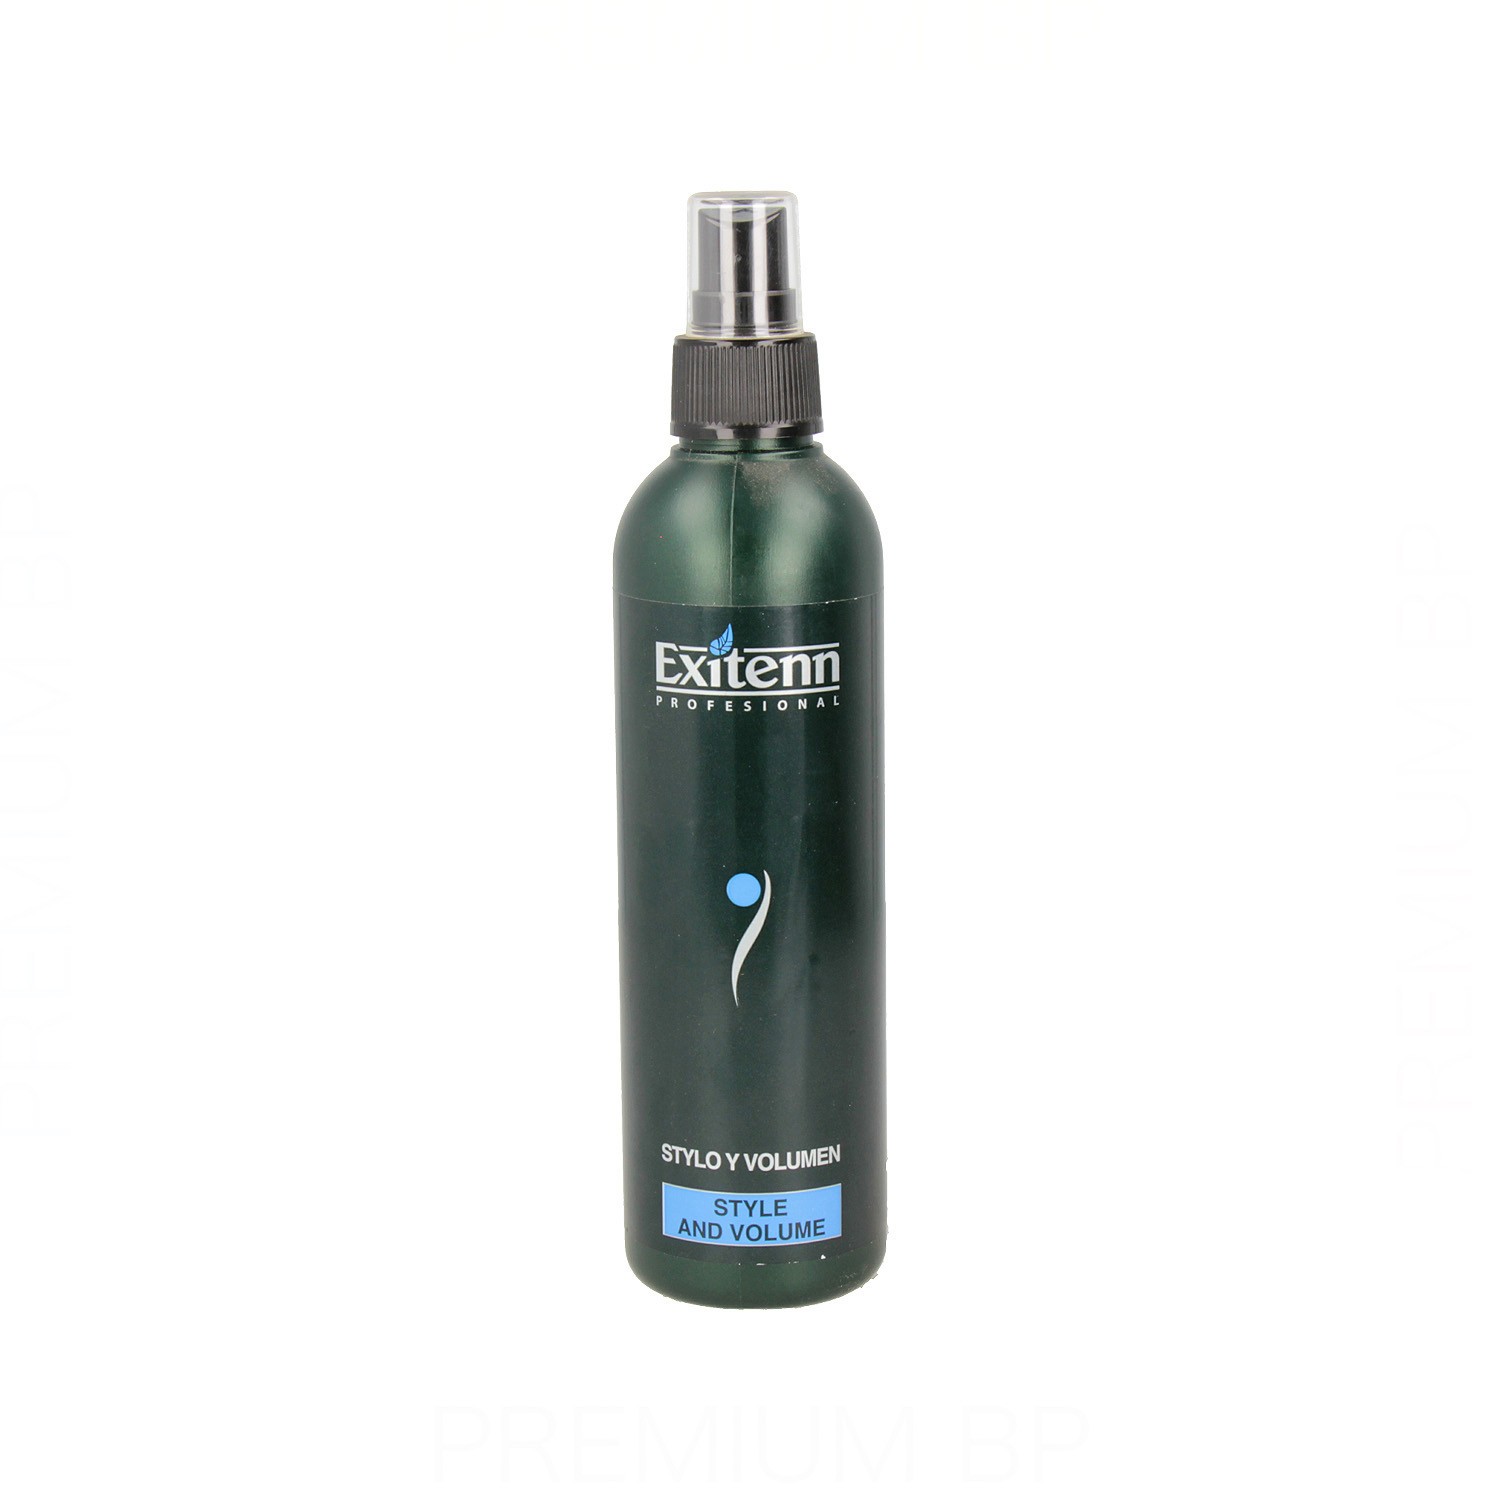 Exitenn - Exitenn stylo y volumen 250 ml, spray para crear estilos y volumen.

  Belleza y cuidado de tu cabello y tu piel con Exitenn.